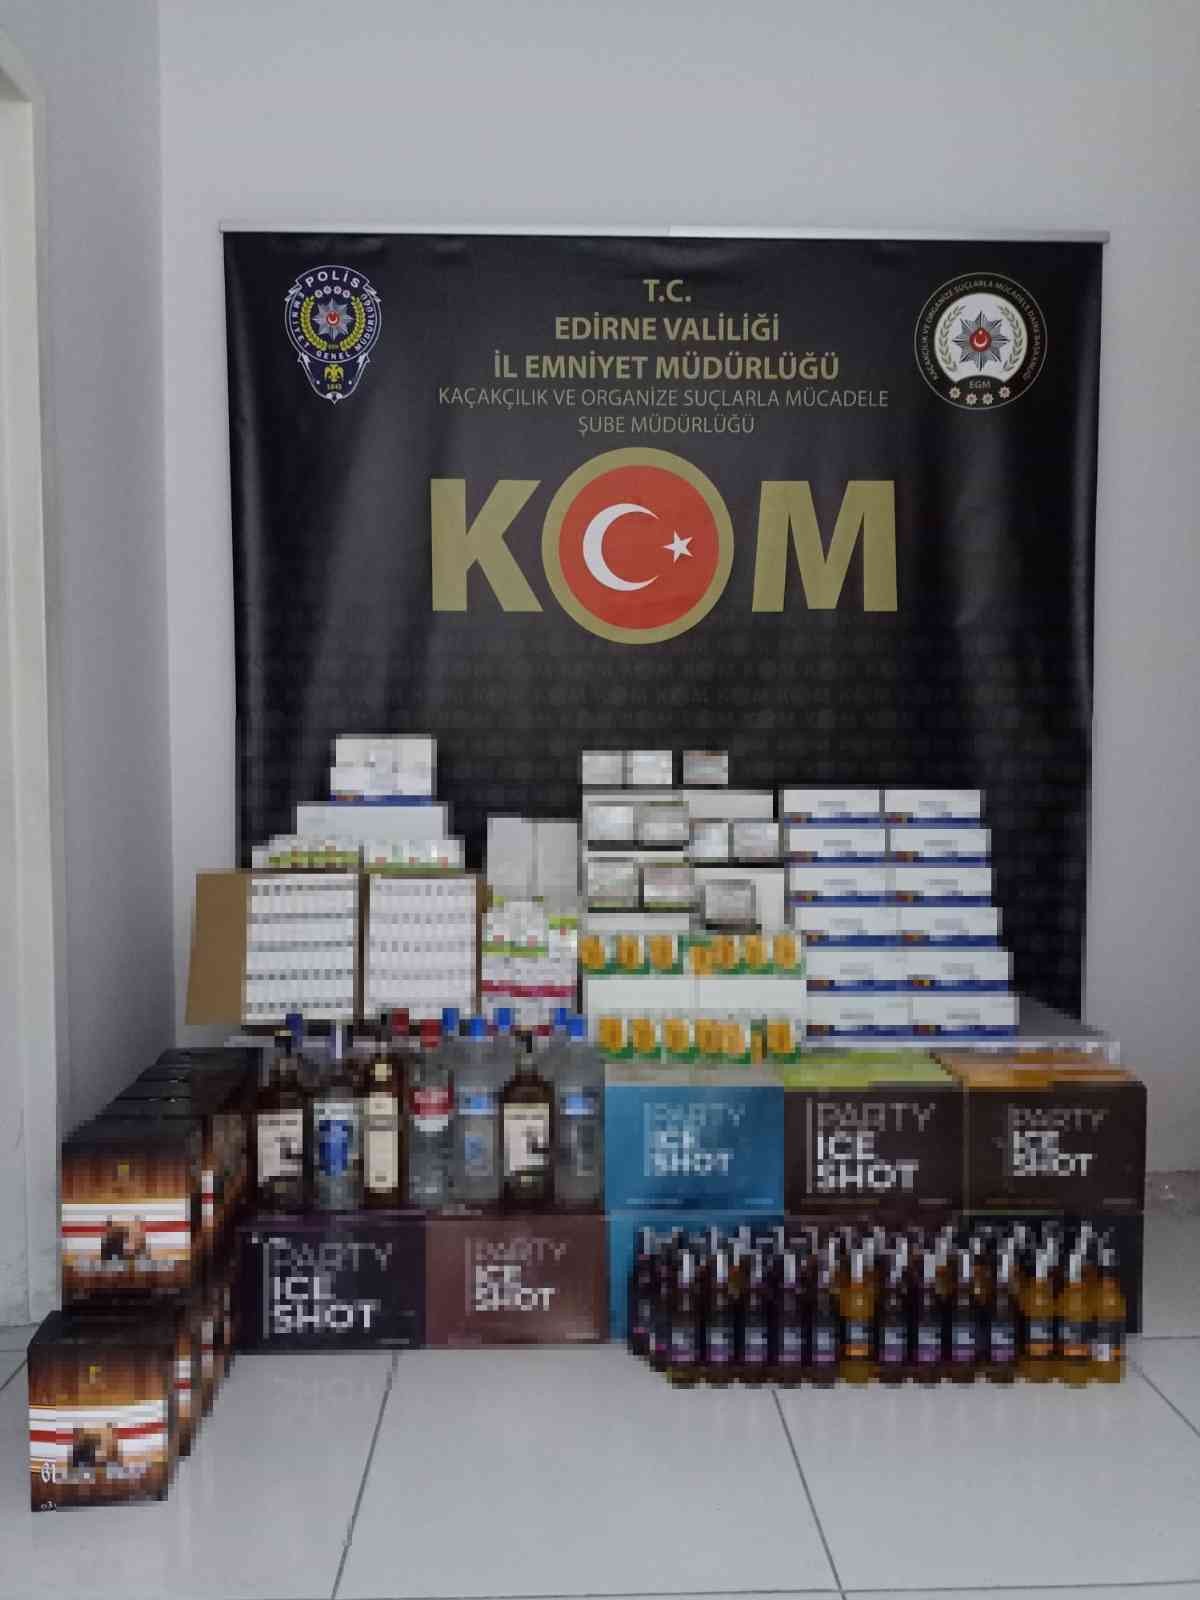 Edirne’de kaçak içki ve cinsel ürün ele geçirildi #edirne